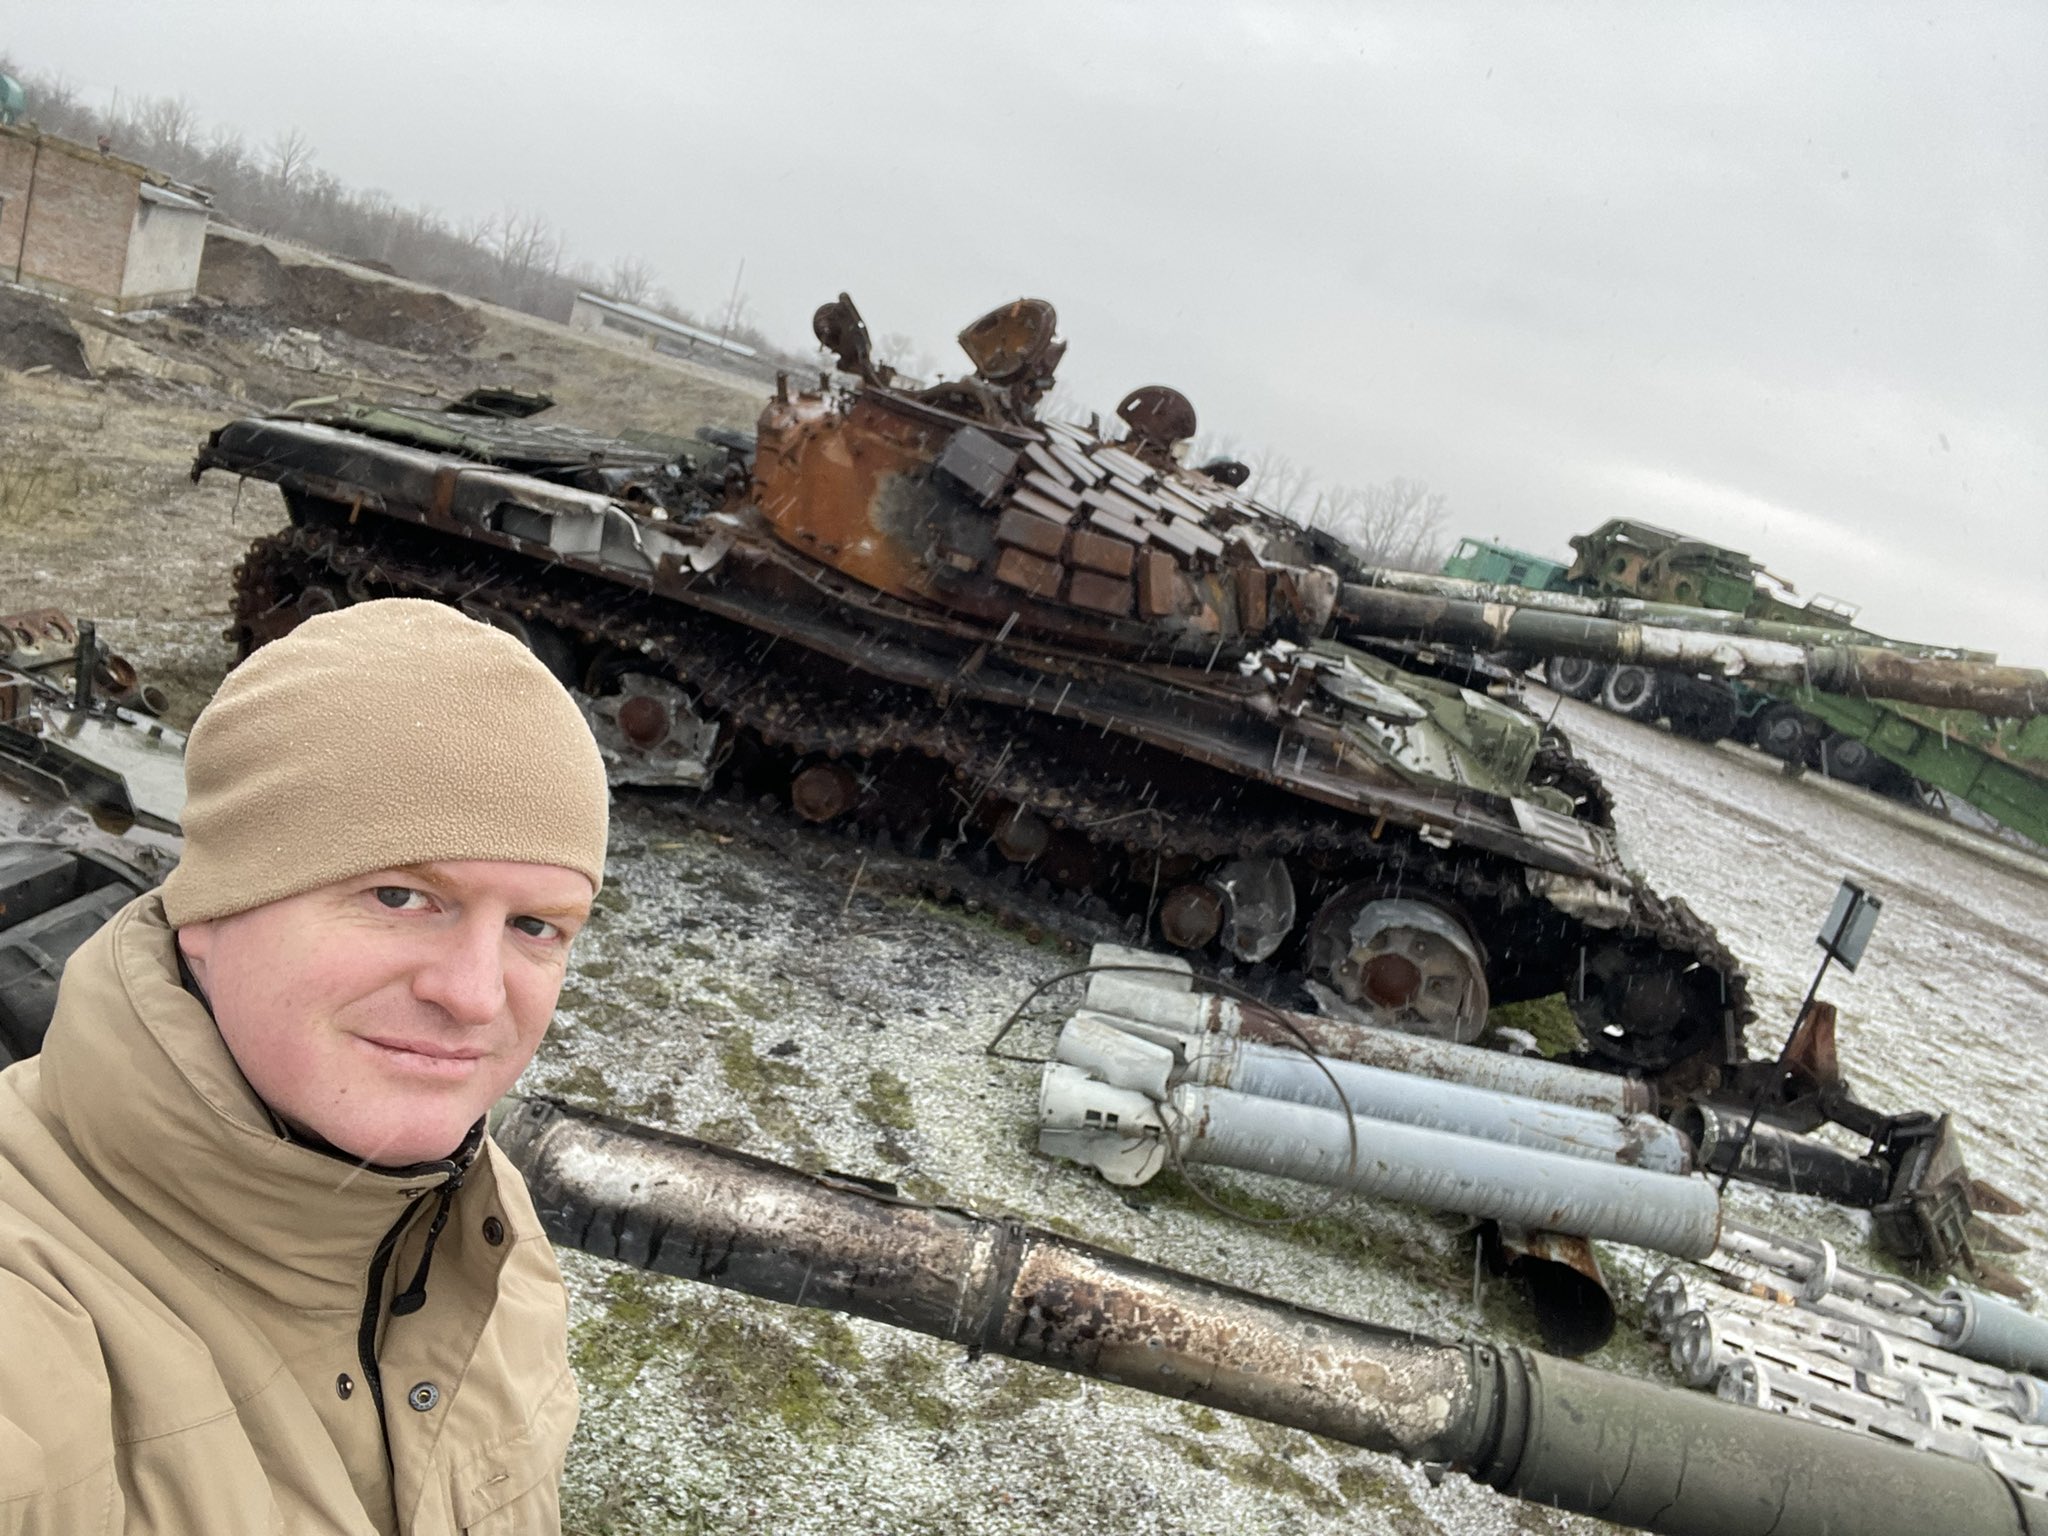 Enno Lenze beim panzer im Perwomaisk in der Ukraine